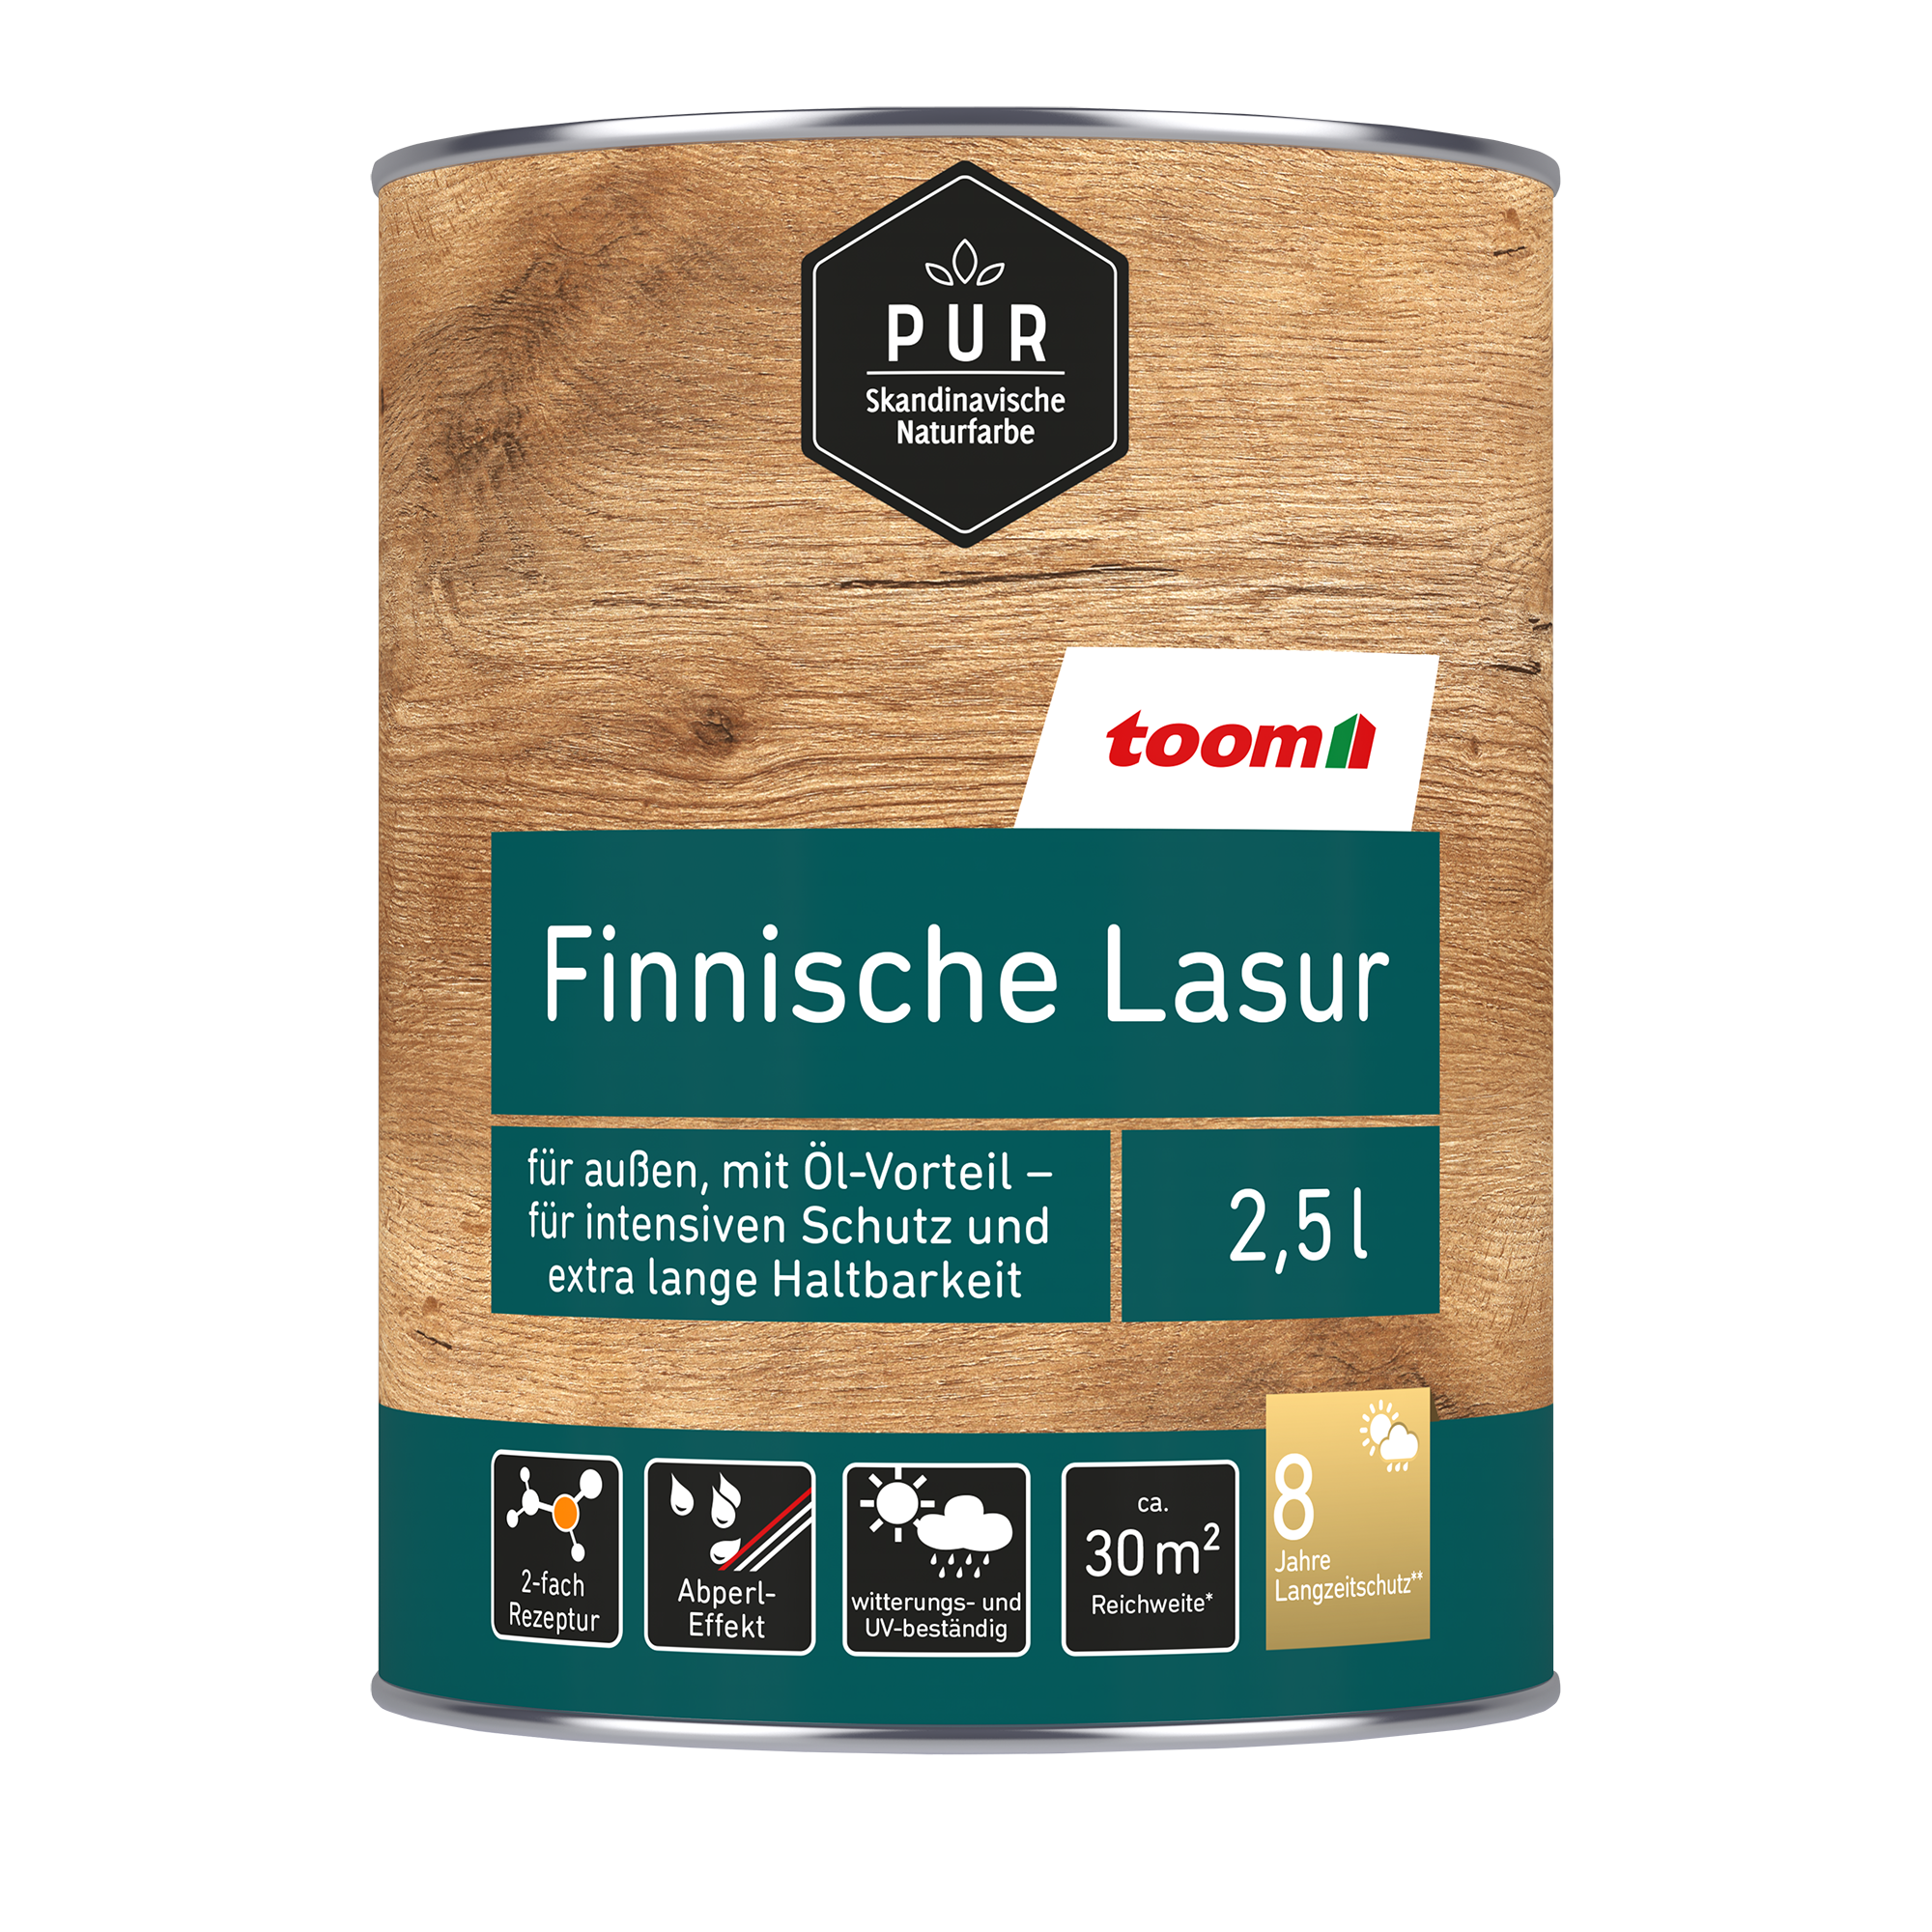 Finnische Lasur kieferfarben 2,5 l + product picture